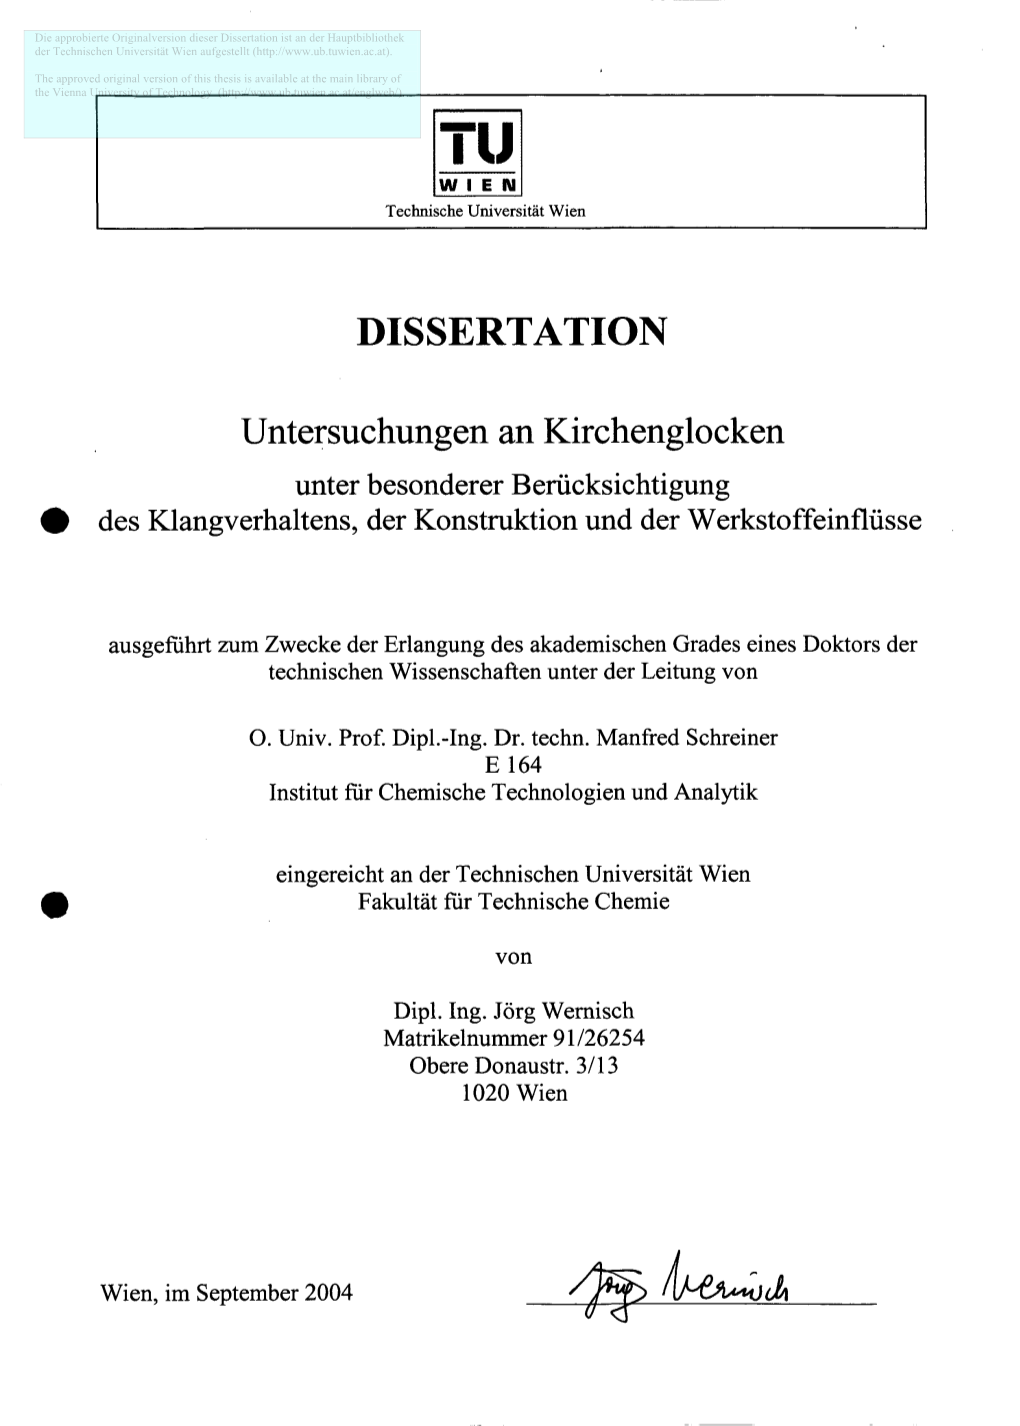 Dissertation Ist an Der Hauptbibliothek Der Technischen Universität Wien Aufgestellt (